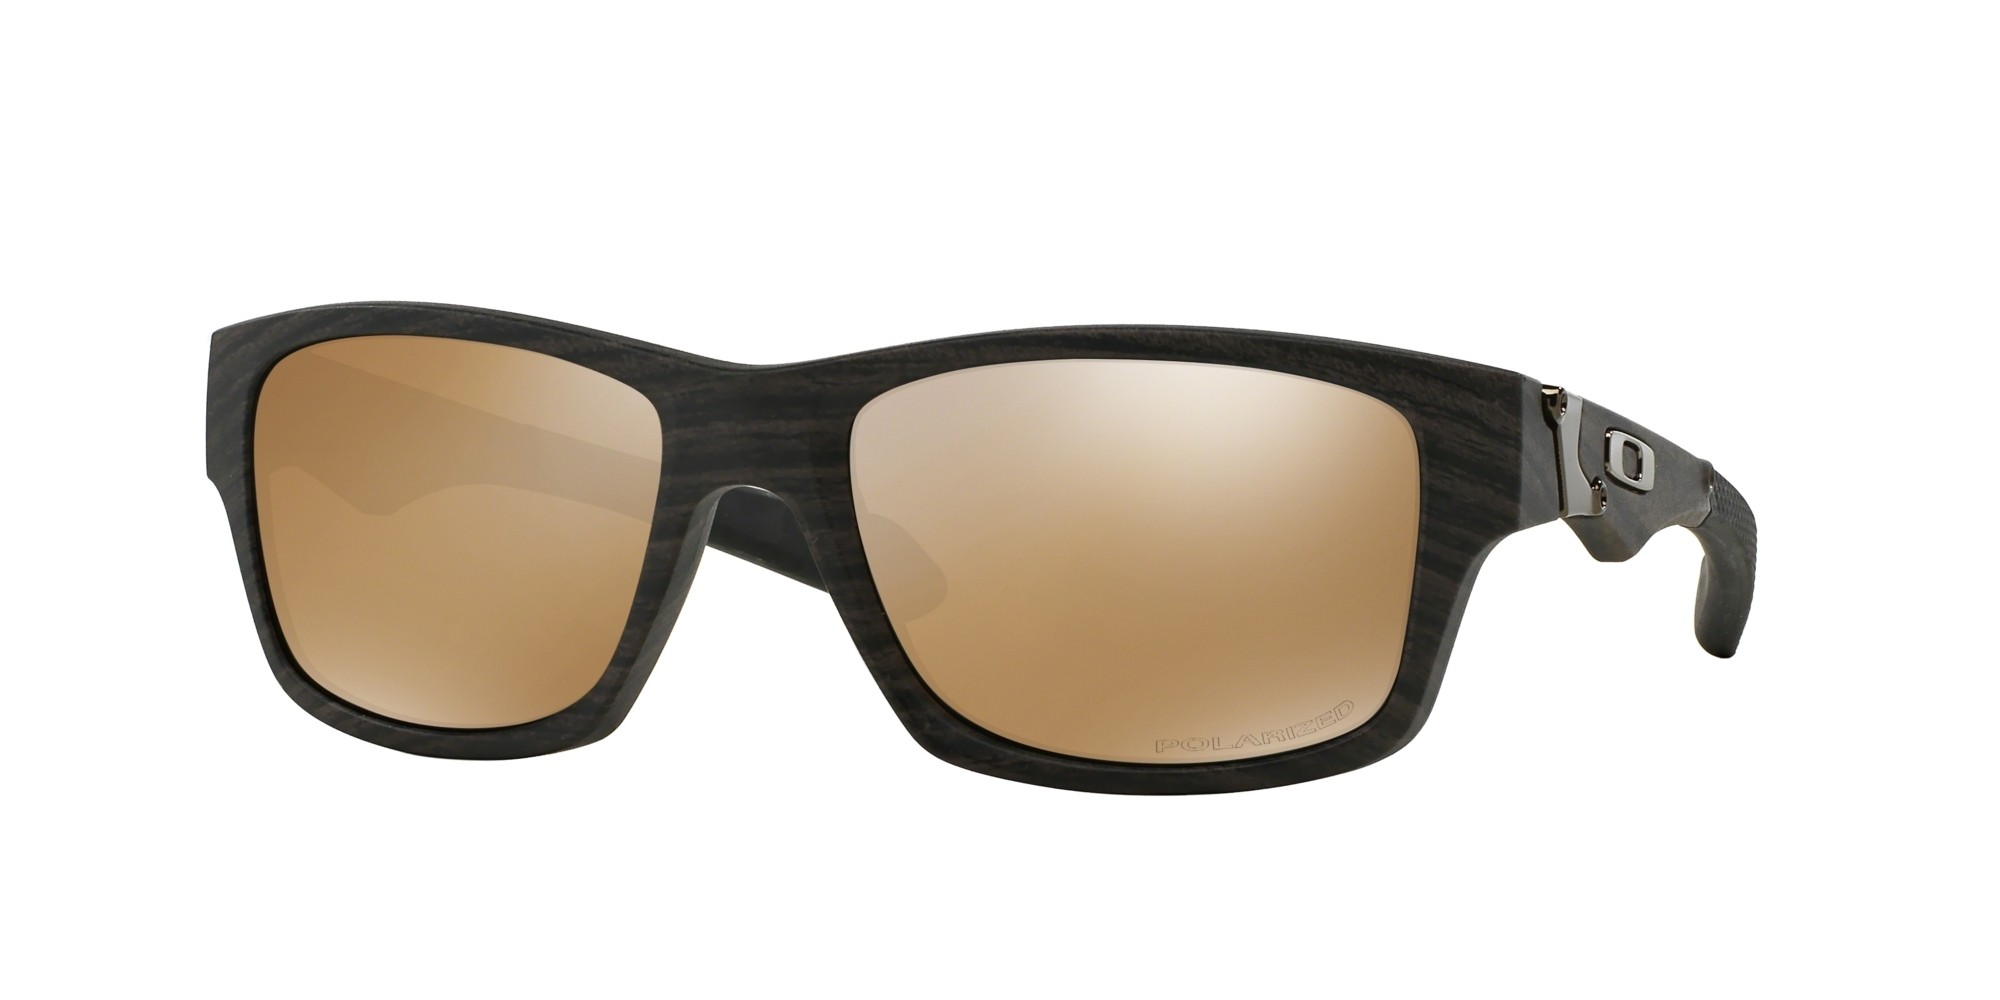 Authentic Oakley Jupiter Squared Prescription Sunglasses